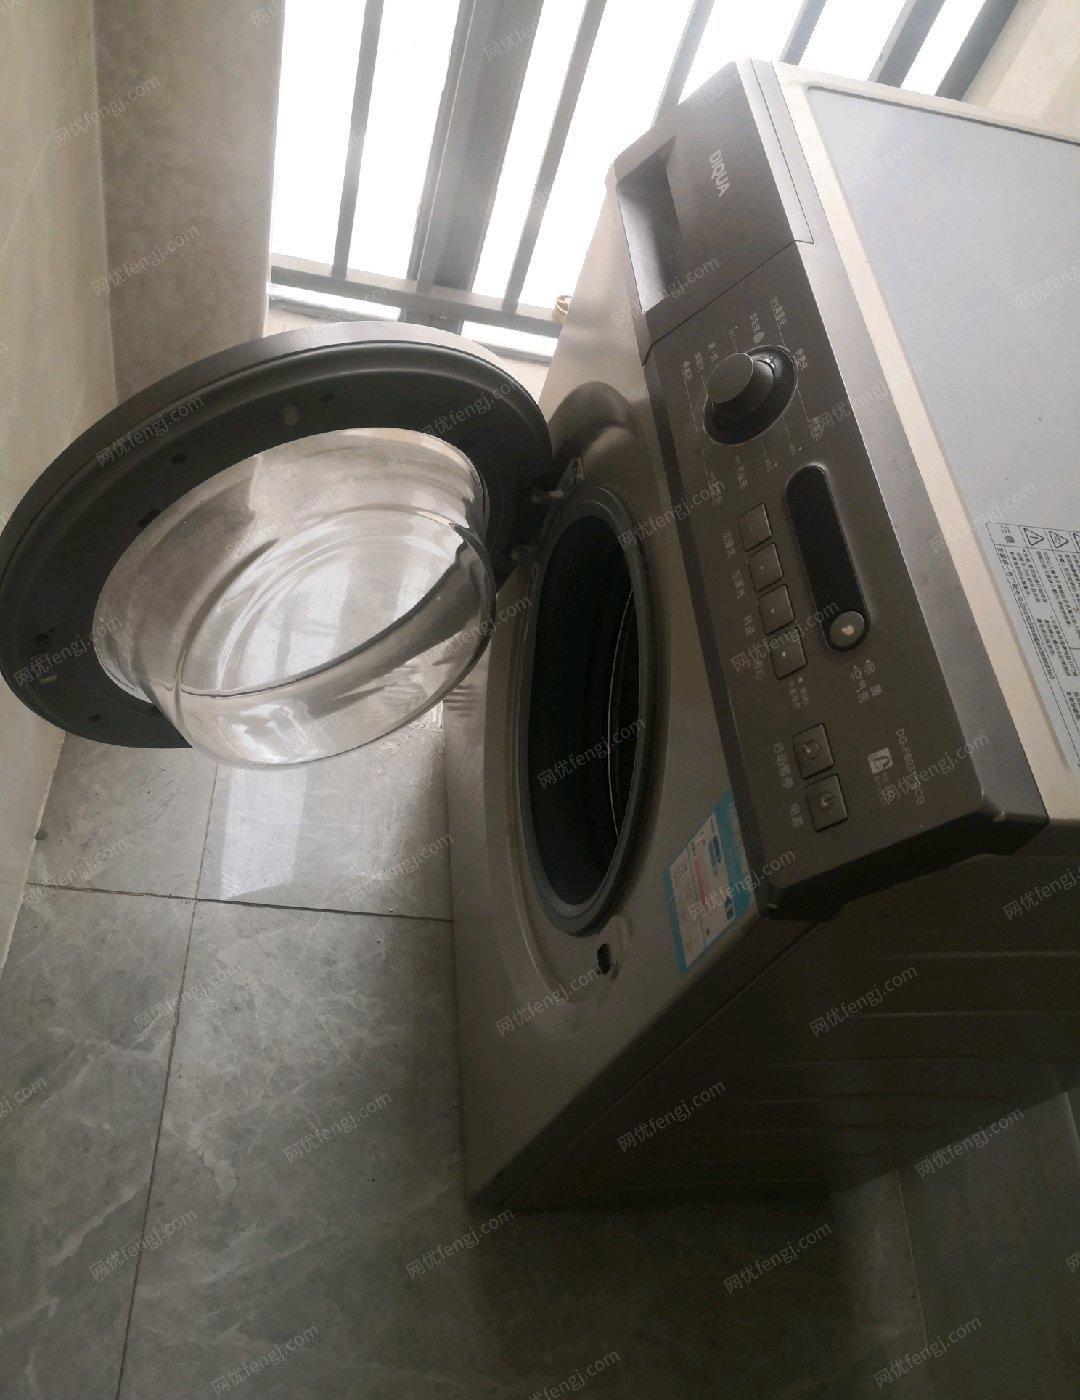 云南昆明三洋滚筒洗衣机 闲置出售